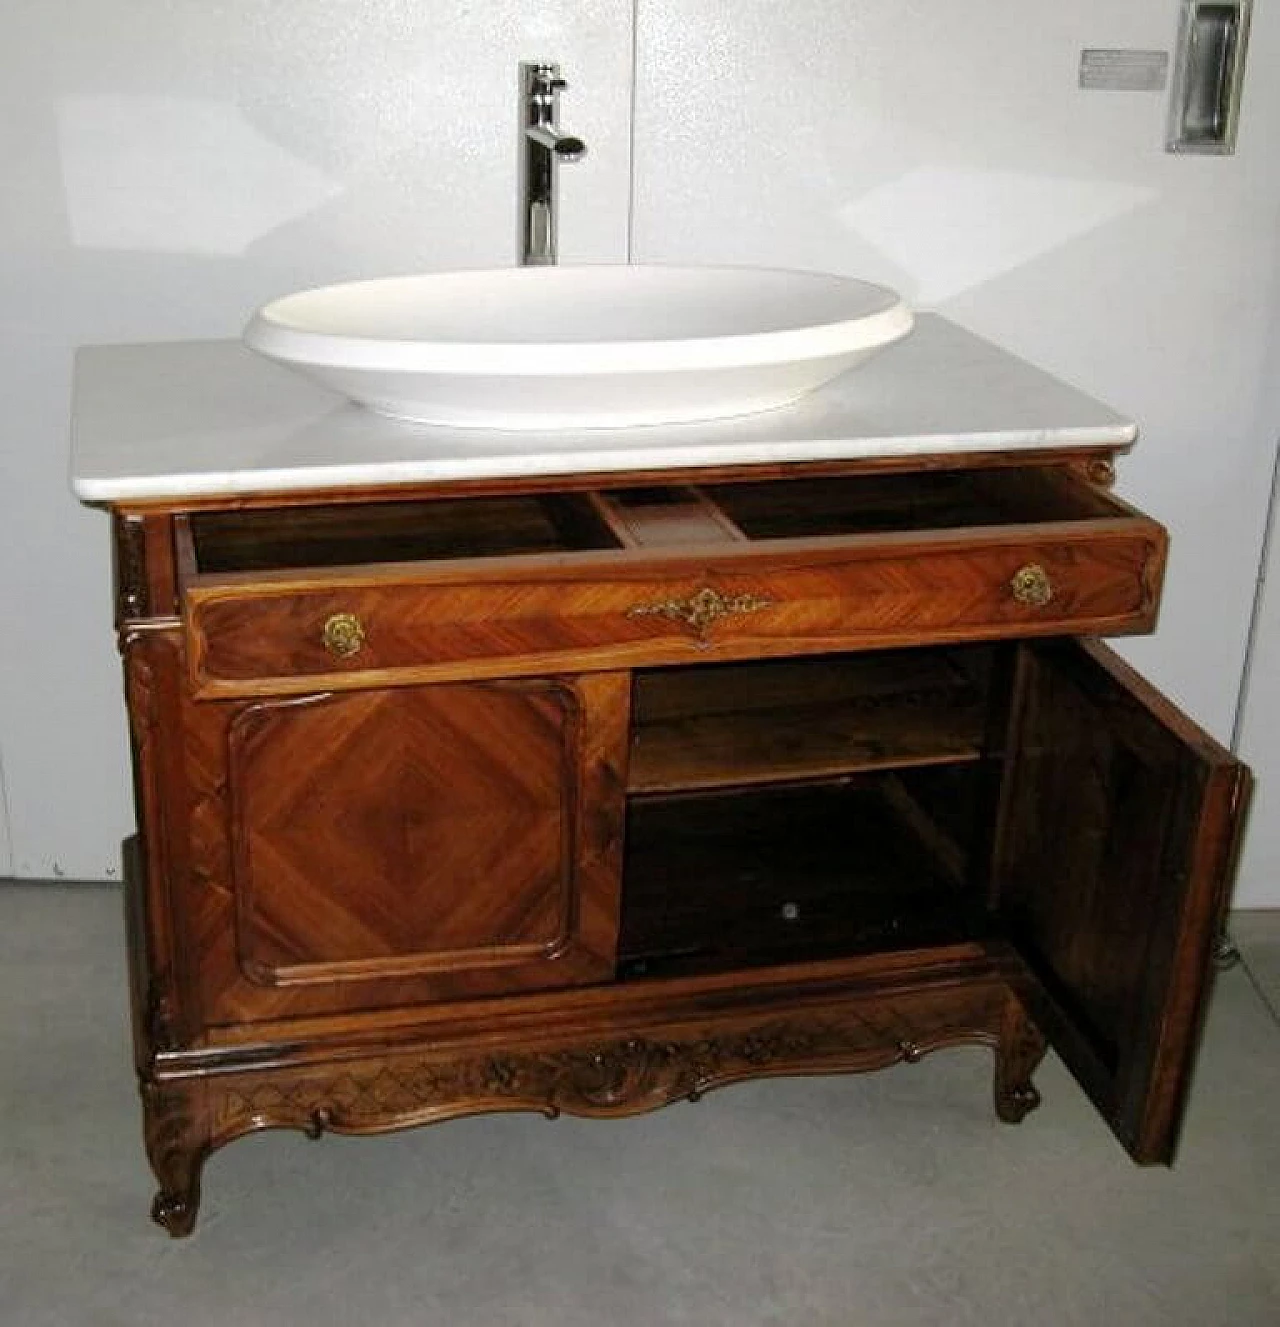 Mobile o toilette francese antica da bagno in noce e marmo di carrara, inizio '900 1167113